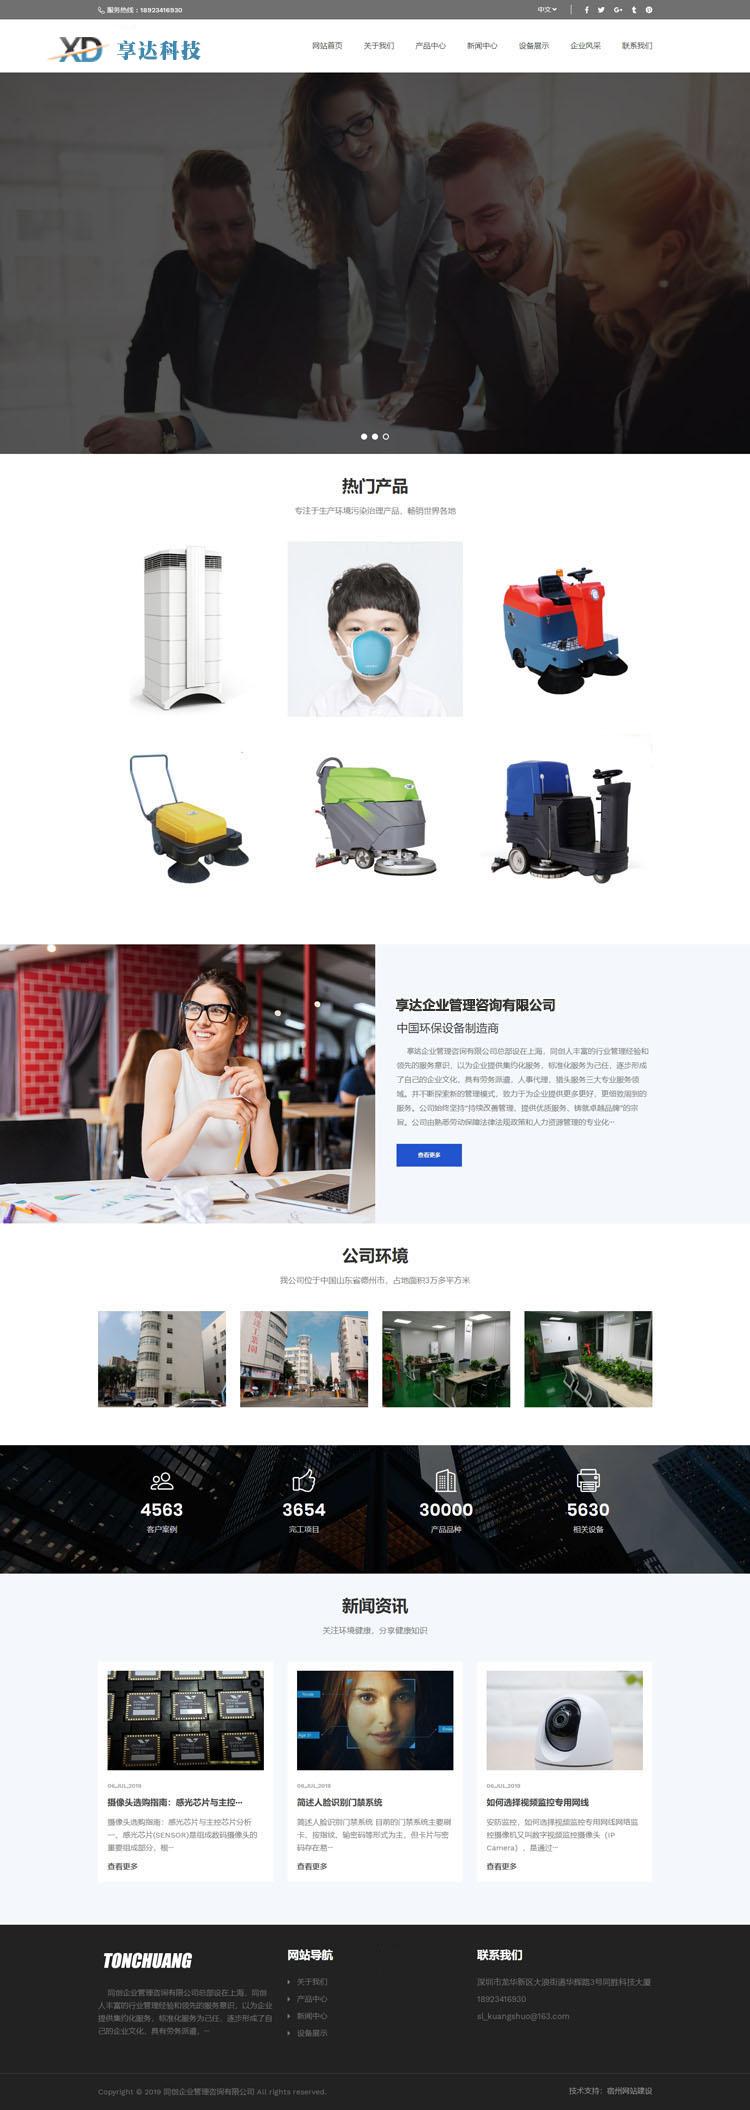 重庆980元做一个电子产品生产企业网站